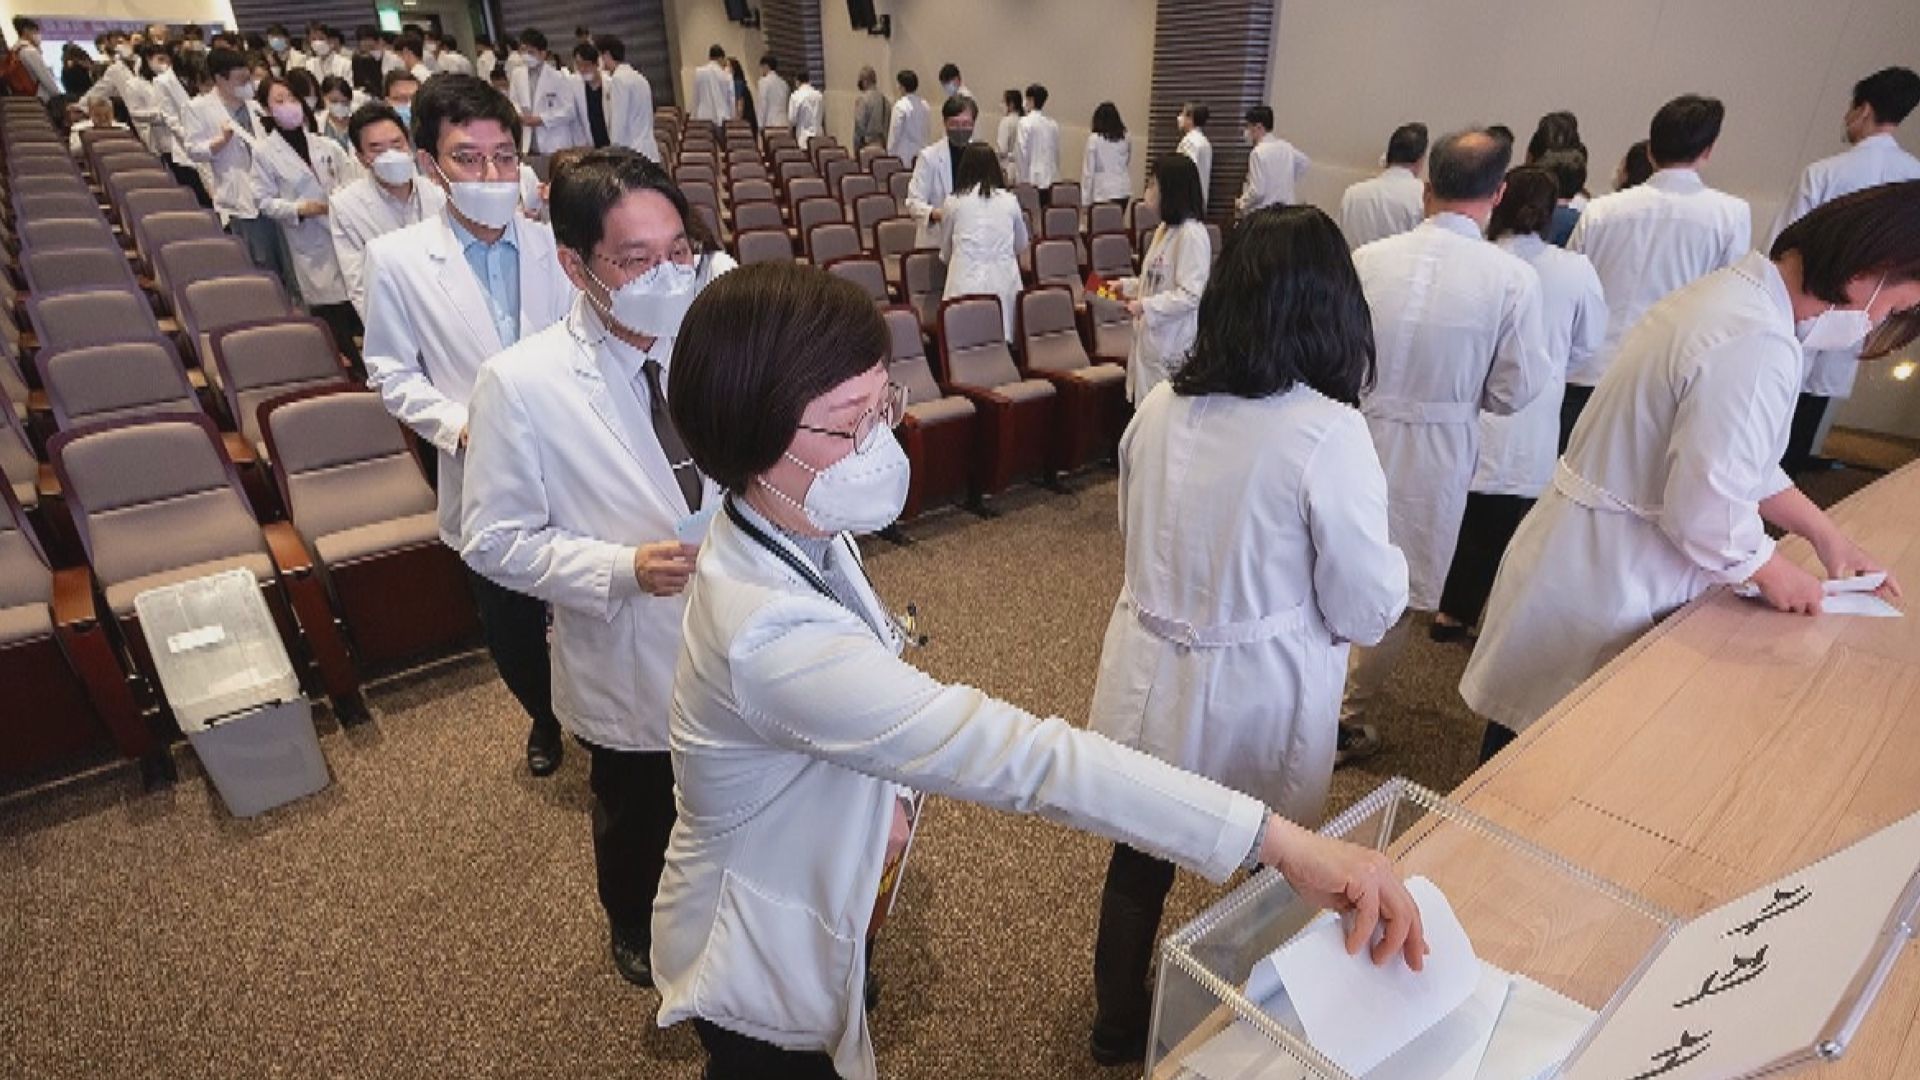 南韓醫學院教授集體請辭 政府望盡快營造機會對話